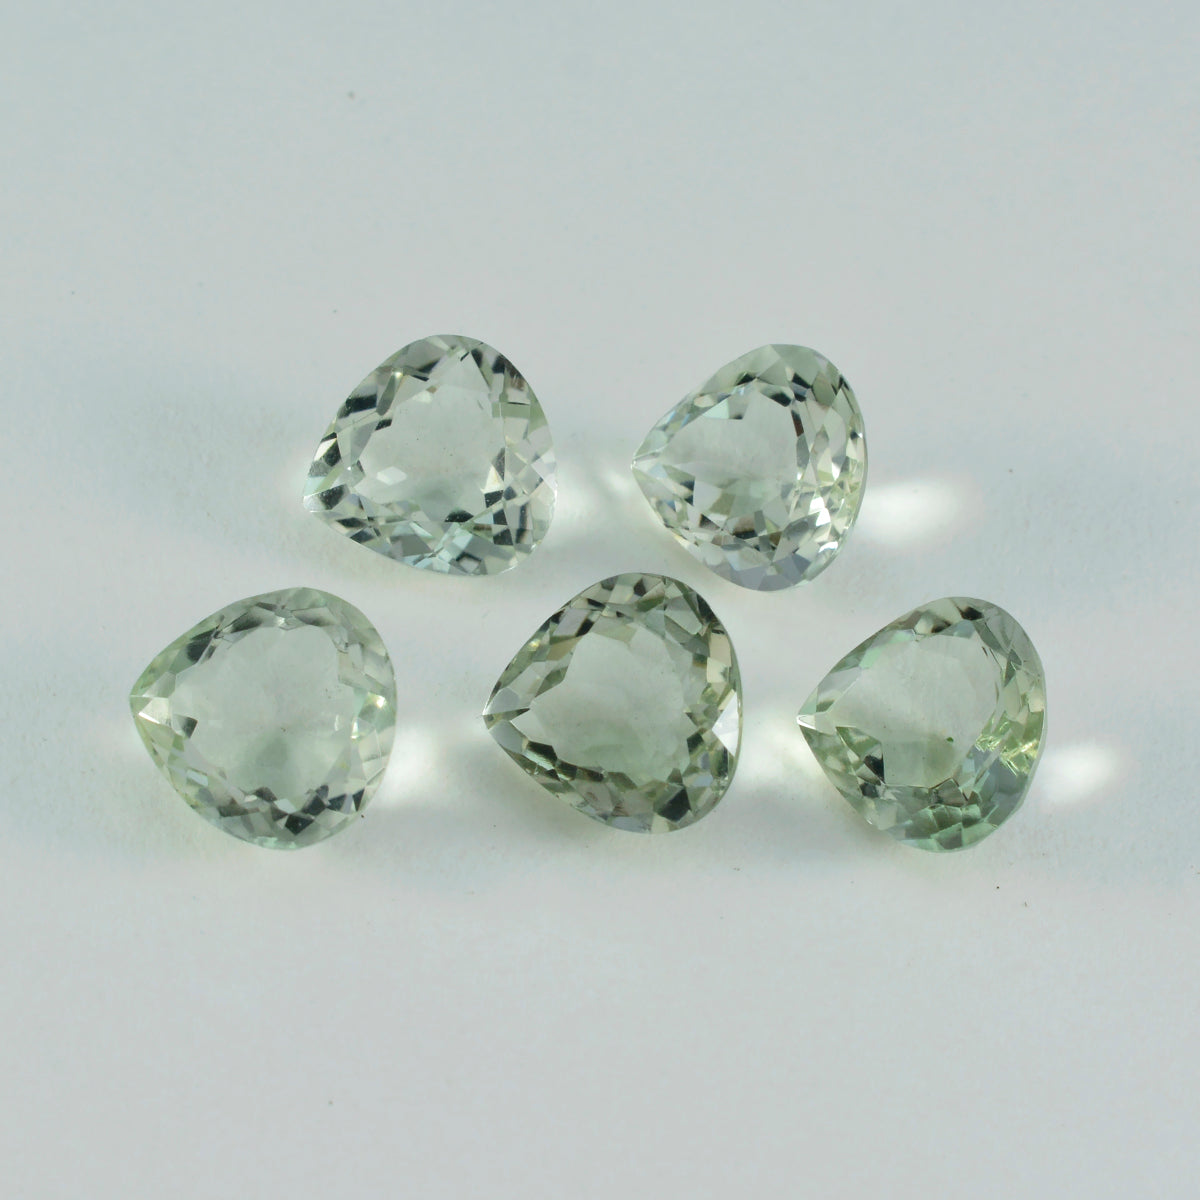 riyogems 1шт зеленый аметист ограненный 14x14 мм в форме сердца привлекательные качественные свободные драгоценные камни